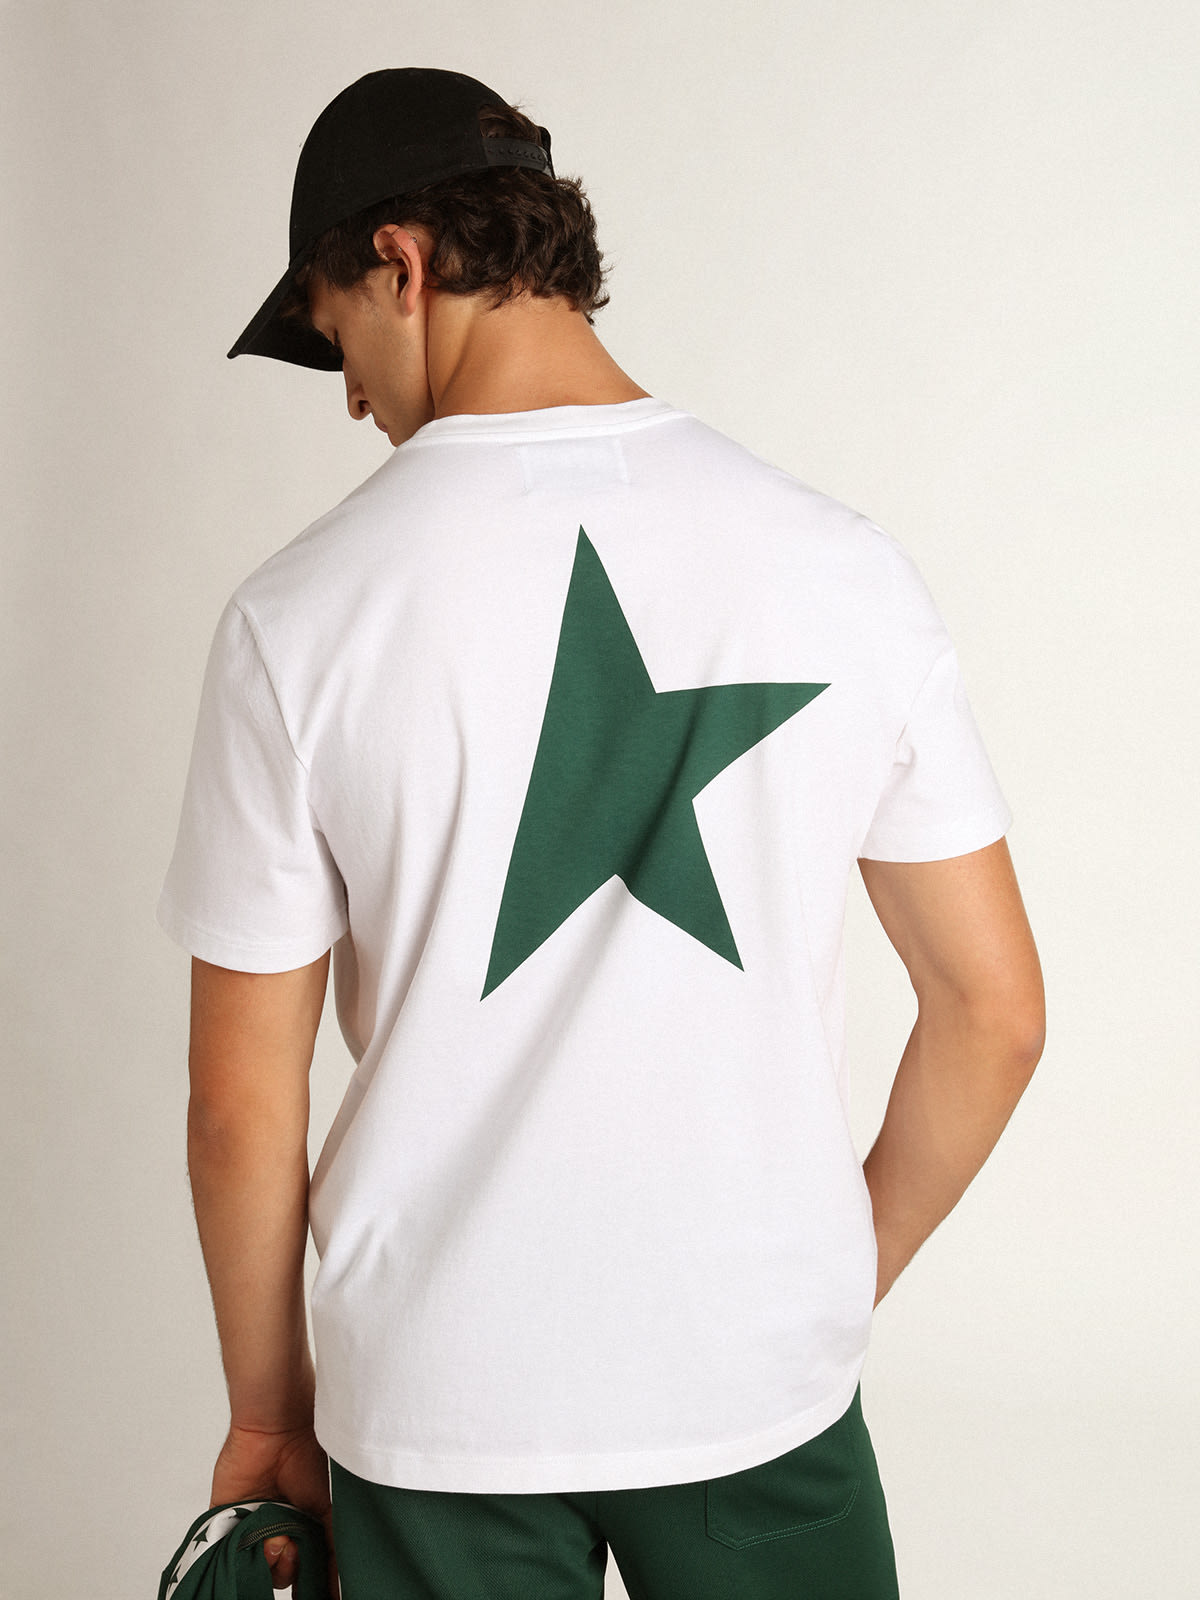 Golden Goose - T-shirt bianca Collezione Star con logo e stella verdi a contrasto in 